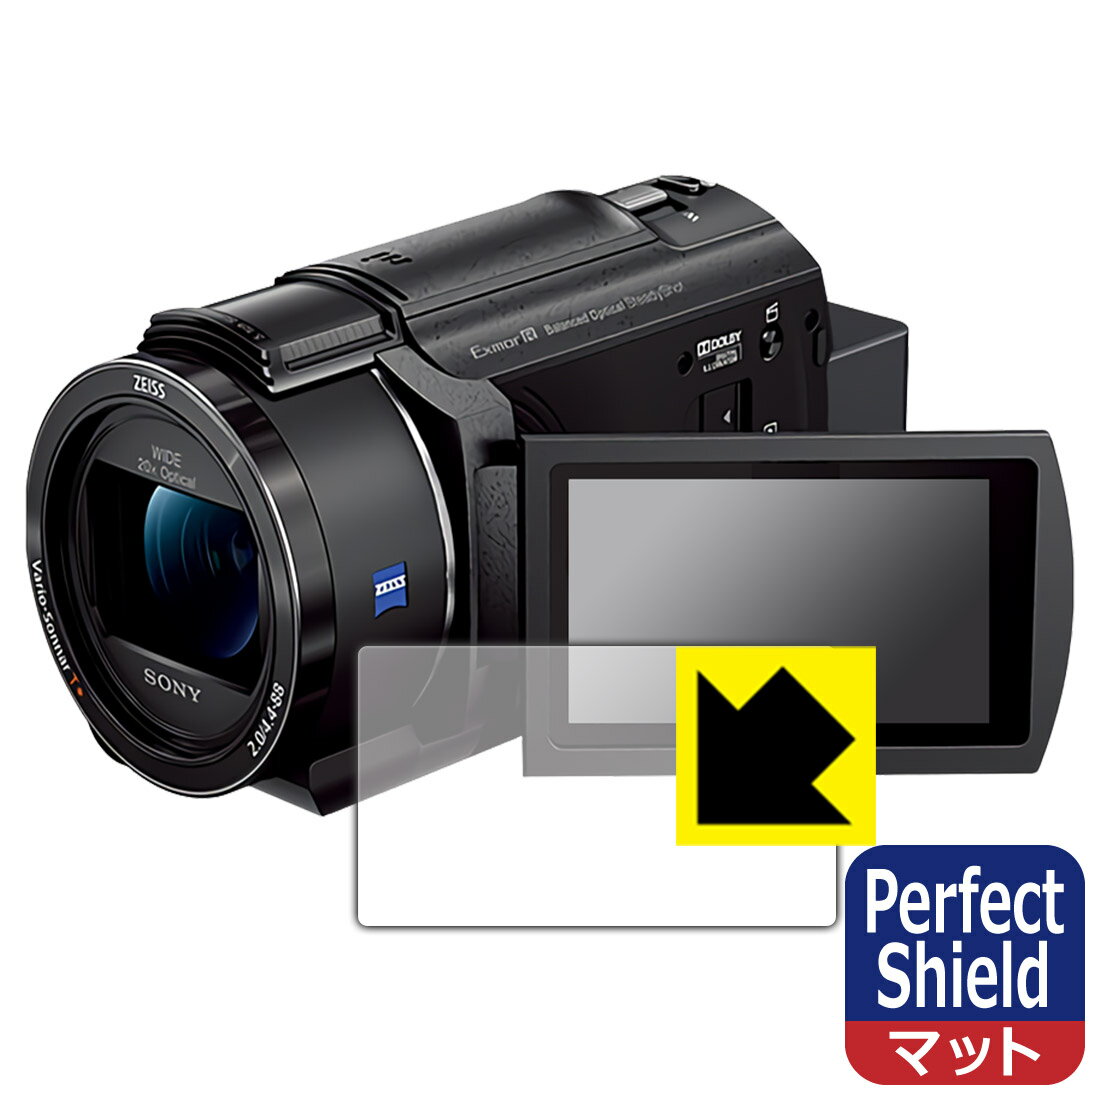 ●対応機種 : SONY デジタル4Kビデオカメラレコーダー FDR-AX45A専用の商品です。●製品内容 : 画面用フィルム3枚・クリーニングワイプ1個●「Perfect Shield」は画面の反射を抑え、指のすべりもなめらかな指紋や皮脂汚れがつきにくい『アンチグレアタイプ(非光沢)の保護フィルム』●安心の国産素材を使用。日本国内の自社工場で製造し出荷しています。 ★貼り付け失敗交換サービス対象商品★【ポスト投函送料無料】商品は【ポスト投函発送 (追跡可能メール便)】で発送します。お急ぎ、配達日時を指定されたい方は以下のクーポンを同時購入ください。【お急ぎ便クーポン】　プラス110円(税込)で速達扱いでの発送。お届けはポストへの投函となります。【配達日時指定クーポン】　プラス550円(税込)で配達日時を指定し、宅配便で発送させていただきます。【お急ぎ便クーポン】はこちらをクリック【配達日時指定クーポン】はこちらをクリック 　 表面に微細な凹凸を作ることにより、外光を乱反射させギラツキを抑える「アンチグレア加工」がされております。 屋外での太陽光の映り込み、屋内でも蛍光灯などの映り込みが気になるシーンが多い方におすすめです。 また、指紋がついた場合でも目立ちにくいという特長があります。 指滑りはさらさらな使用感でストレスのない操作・入力が可能です。 ハードコート加工がされており、キズや擦れに強くなっています。簡単にキズがつかず長くご利用いただけます。 反射防止のアンチグレア加工で指紋が目立ちにくい上、表面は防汚コーティングがされており、皮脂や汚れがつきにくく、また、落ちやすくなっています。 接着面は気泡の入りにくい特殊な自己吸着タイプです。素材に柔軟性があり、貼り付け作業も簡単にできます。また、はがすときにガラス製フィルムのように割れてしまうことはありません。 貼り直しが何度でもできるので、正しい位置へ貼り付けられるまでやり直すことができます。 最高級グレードの国産素材を日本国内の弊社工場で加工している完全な Made in Japan です。安心の品質をお届けします。 使用上の注意 ●本製品は機器の画面をキズなどから保護するフィルムです。他の目的にはご使用にならないでください。 ●本製品は液晶保護および機器本体を完全に保護することを保証するものではありません。機器の破損、損傷、故障、その他損害につきましては一切の責任を負いかねます。 ●製品の性質上、画面操作の反応が変化したり、表示等が変化して見える場合がございます。 ●貼り付け作業時の失敗(位置ズレ、汚れ、ゆがみ、折れ、気泡など)および取り外し作業時の破損、損傷などについては、一切の責任を負いかねます。 ●水に濡れた状態でのご使用は吸着力の低下などにより、保護フィルムがはがれてしまう場合がございます。防水対応の機器でご使用の場合はご注意ください。 ●アルコール類やその他薬剤を本製品に付着させないでください。表面のコーティングや吸着面が変質するおそれがあります。 ●品質向上のため、仕様などを予告なく変更する場合がございますので、予めご了承ください。